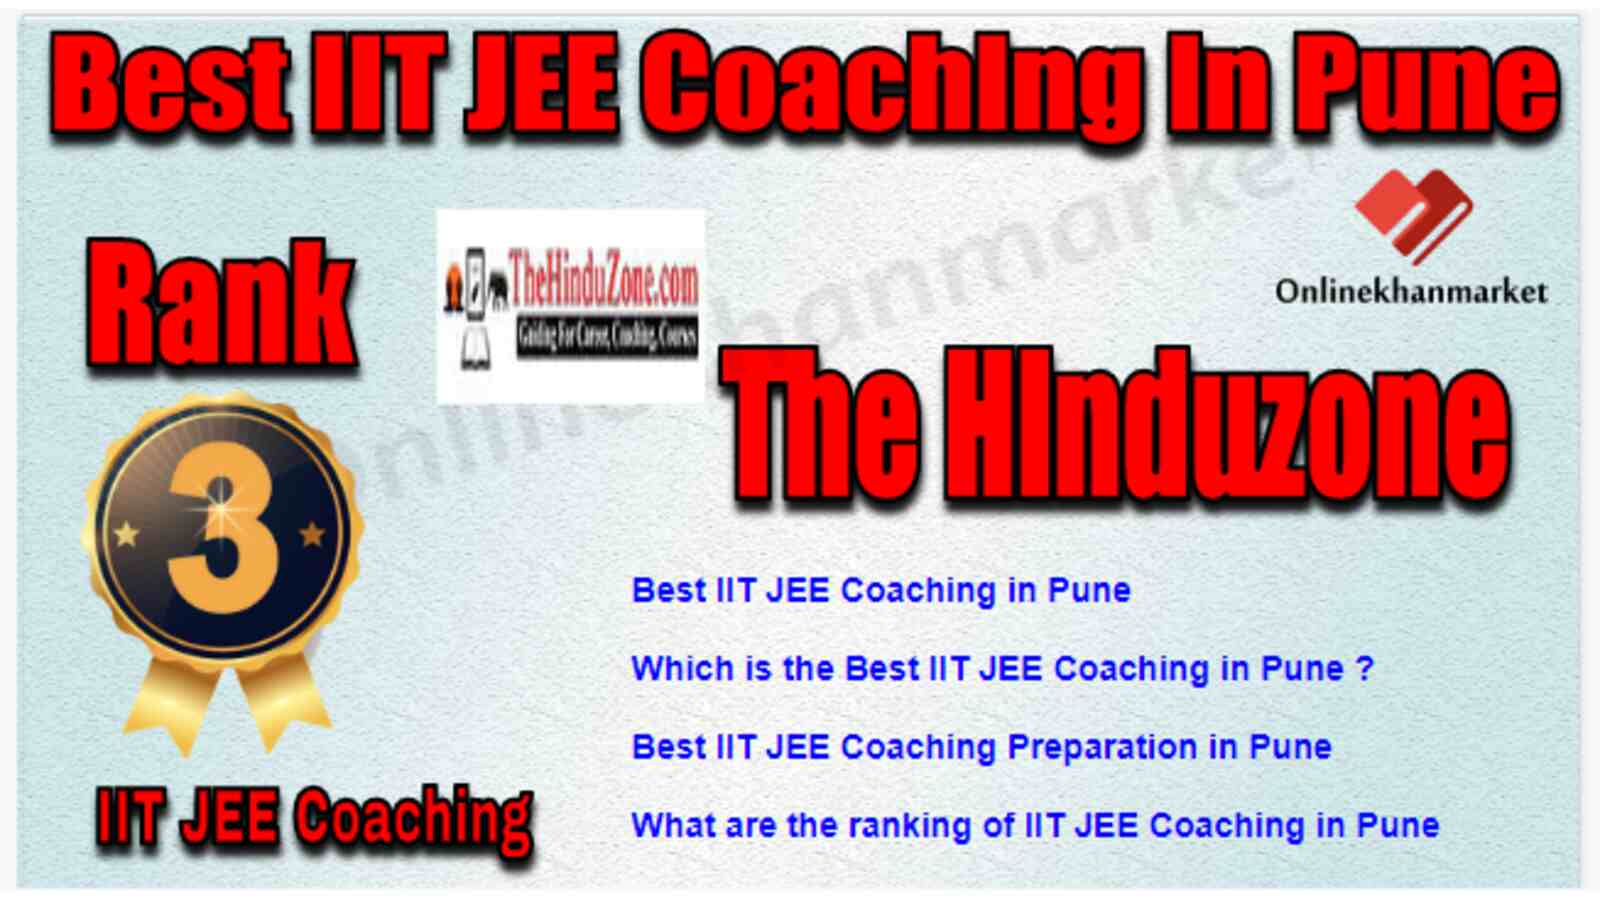 Rank 3 Best IIT JEE Coaching in Pune